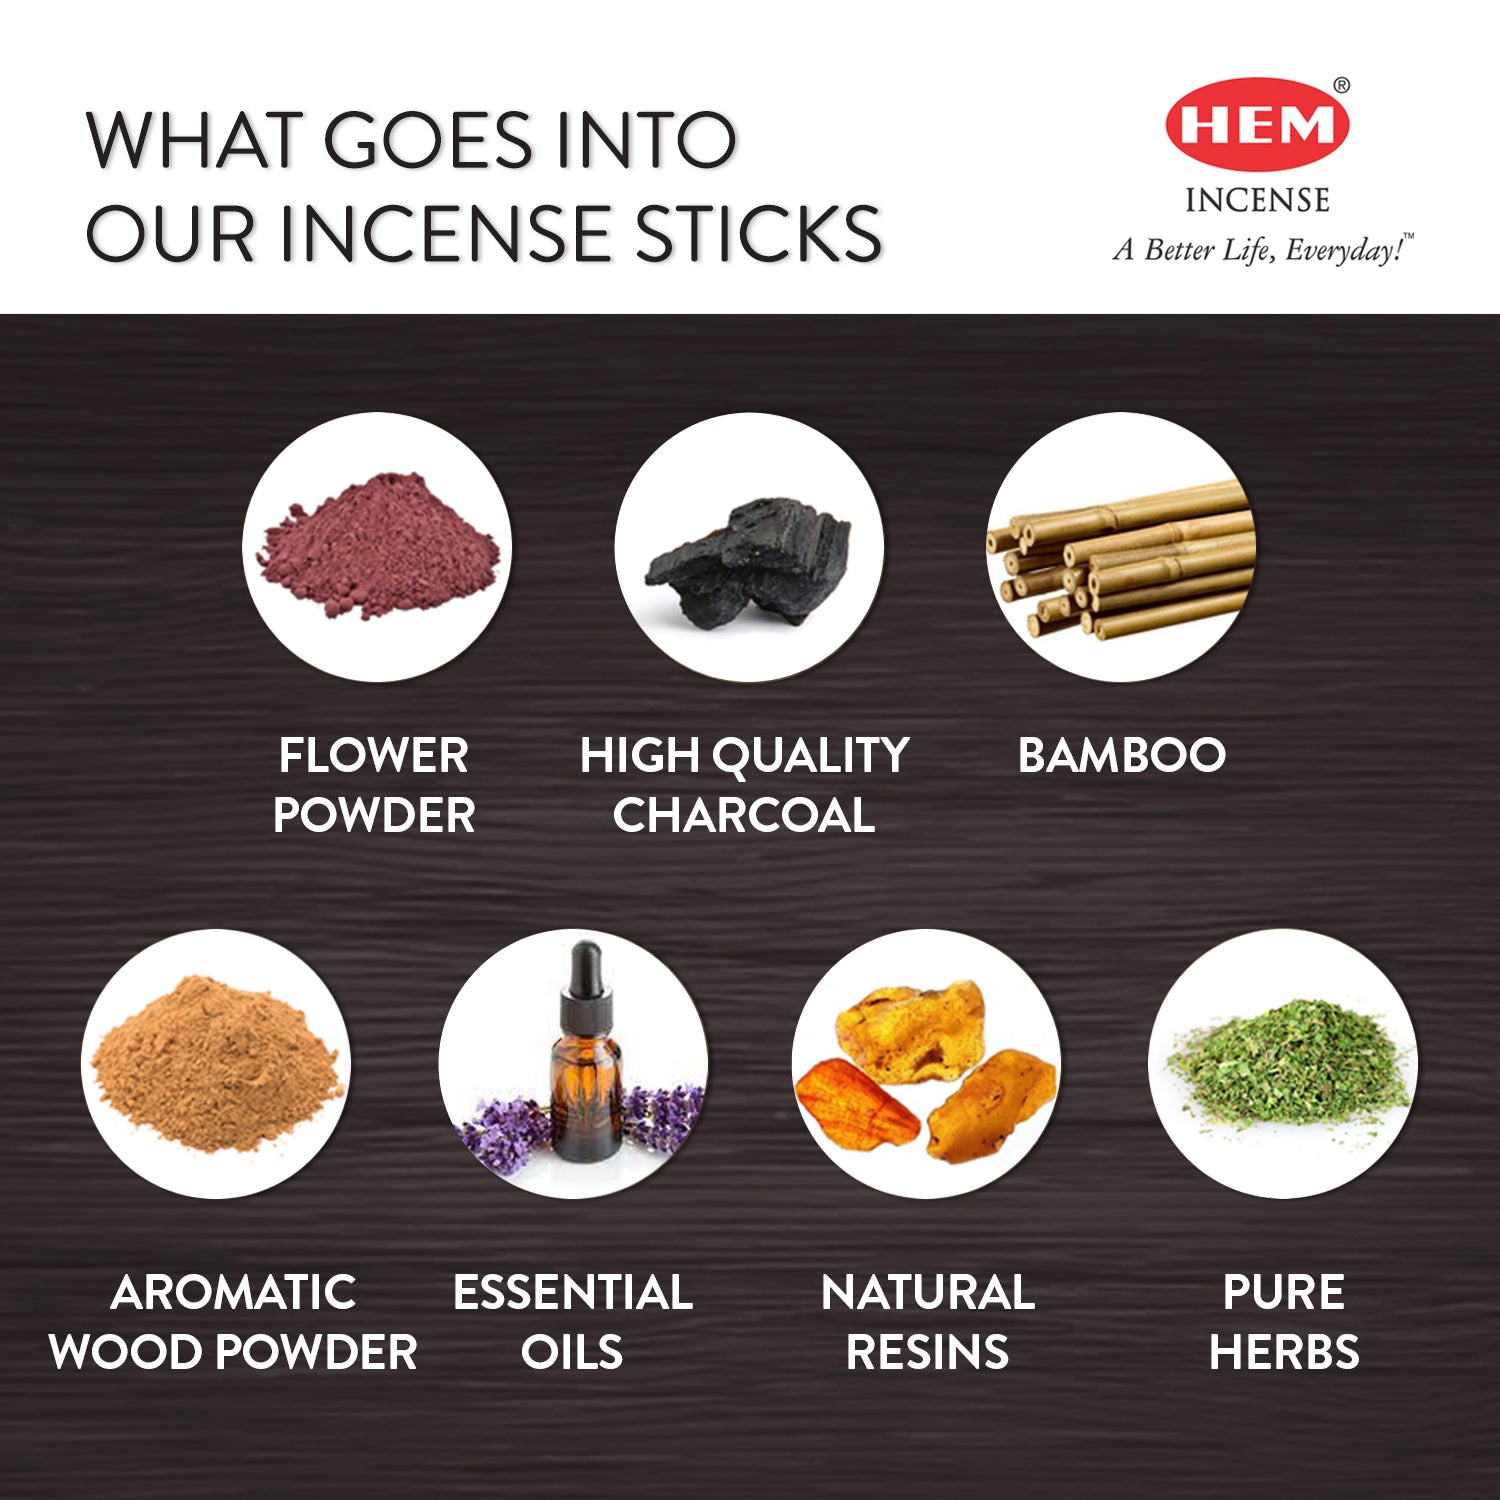 hem-smudging-indulgence-masala-incense-stick-kit-ingredients